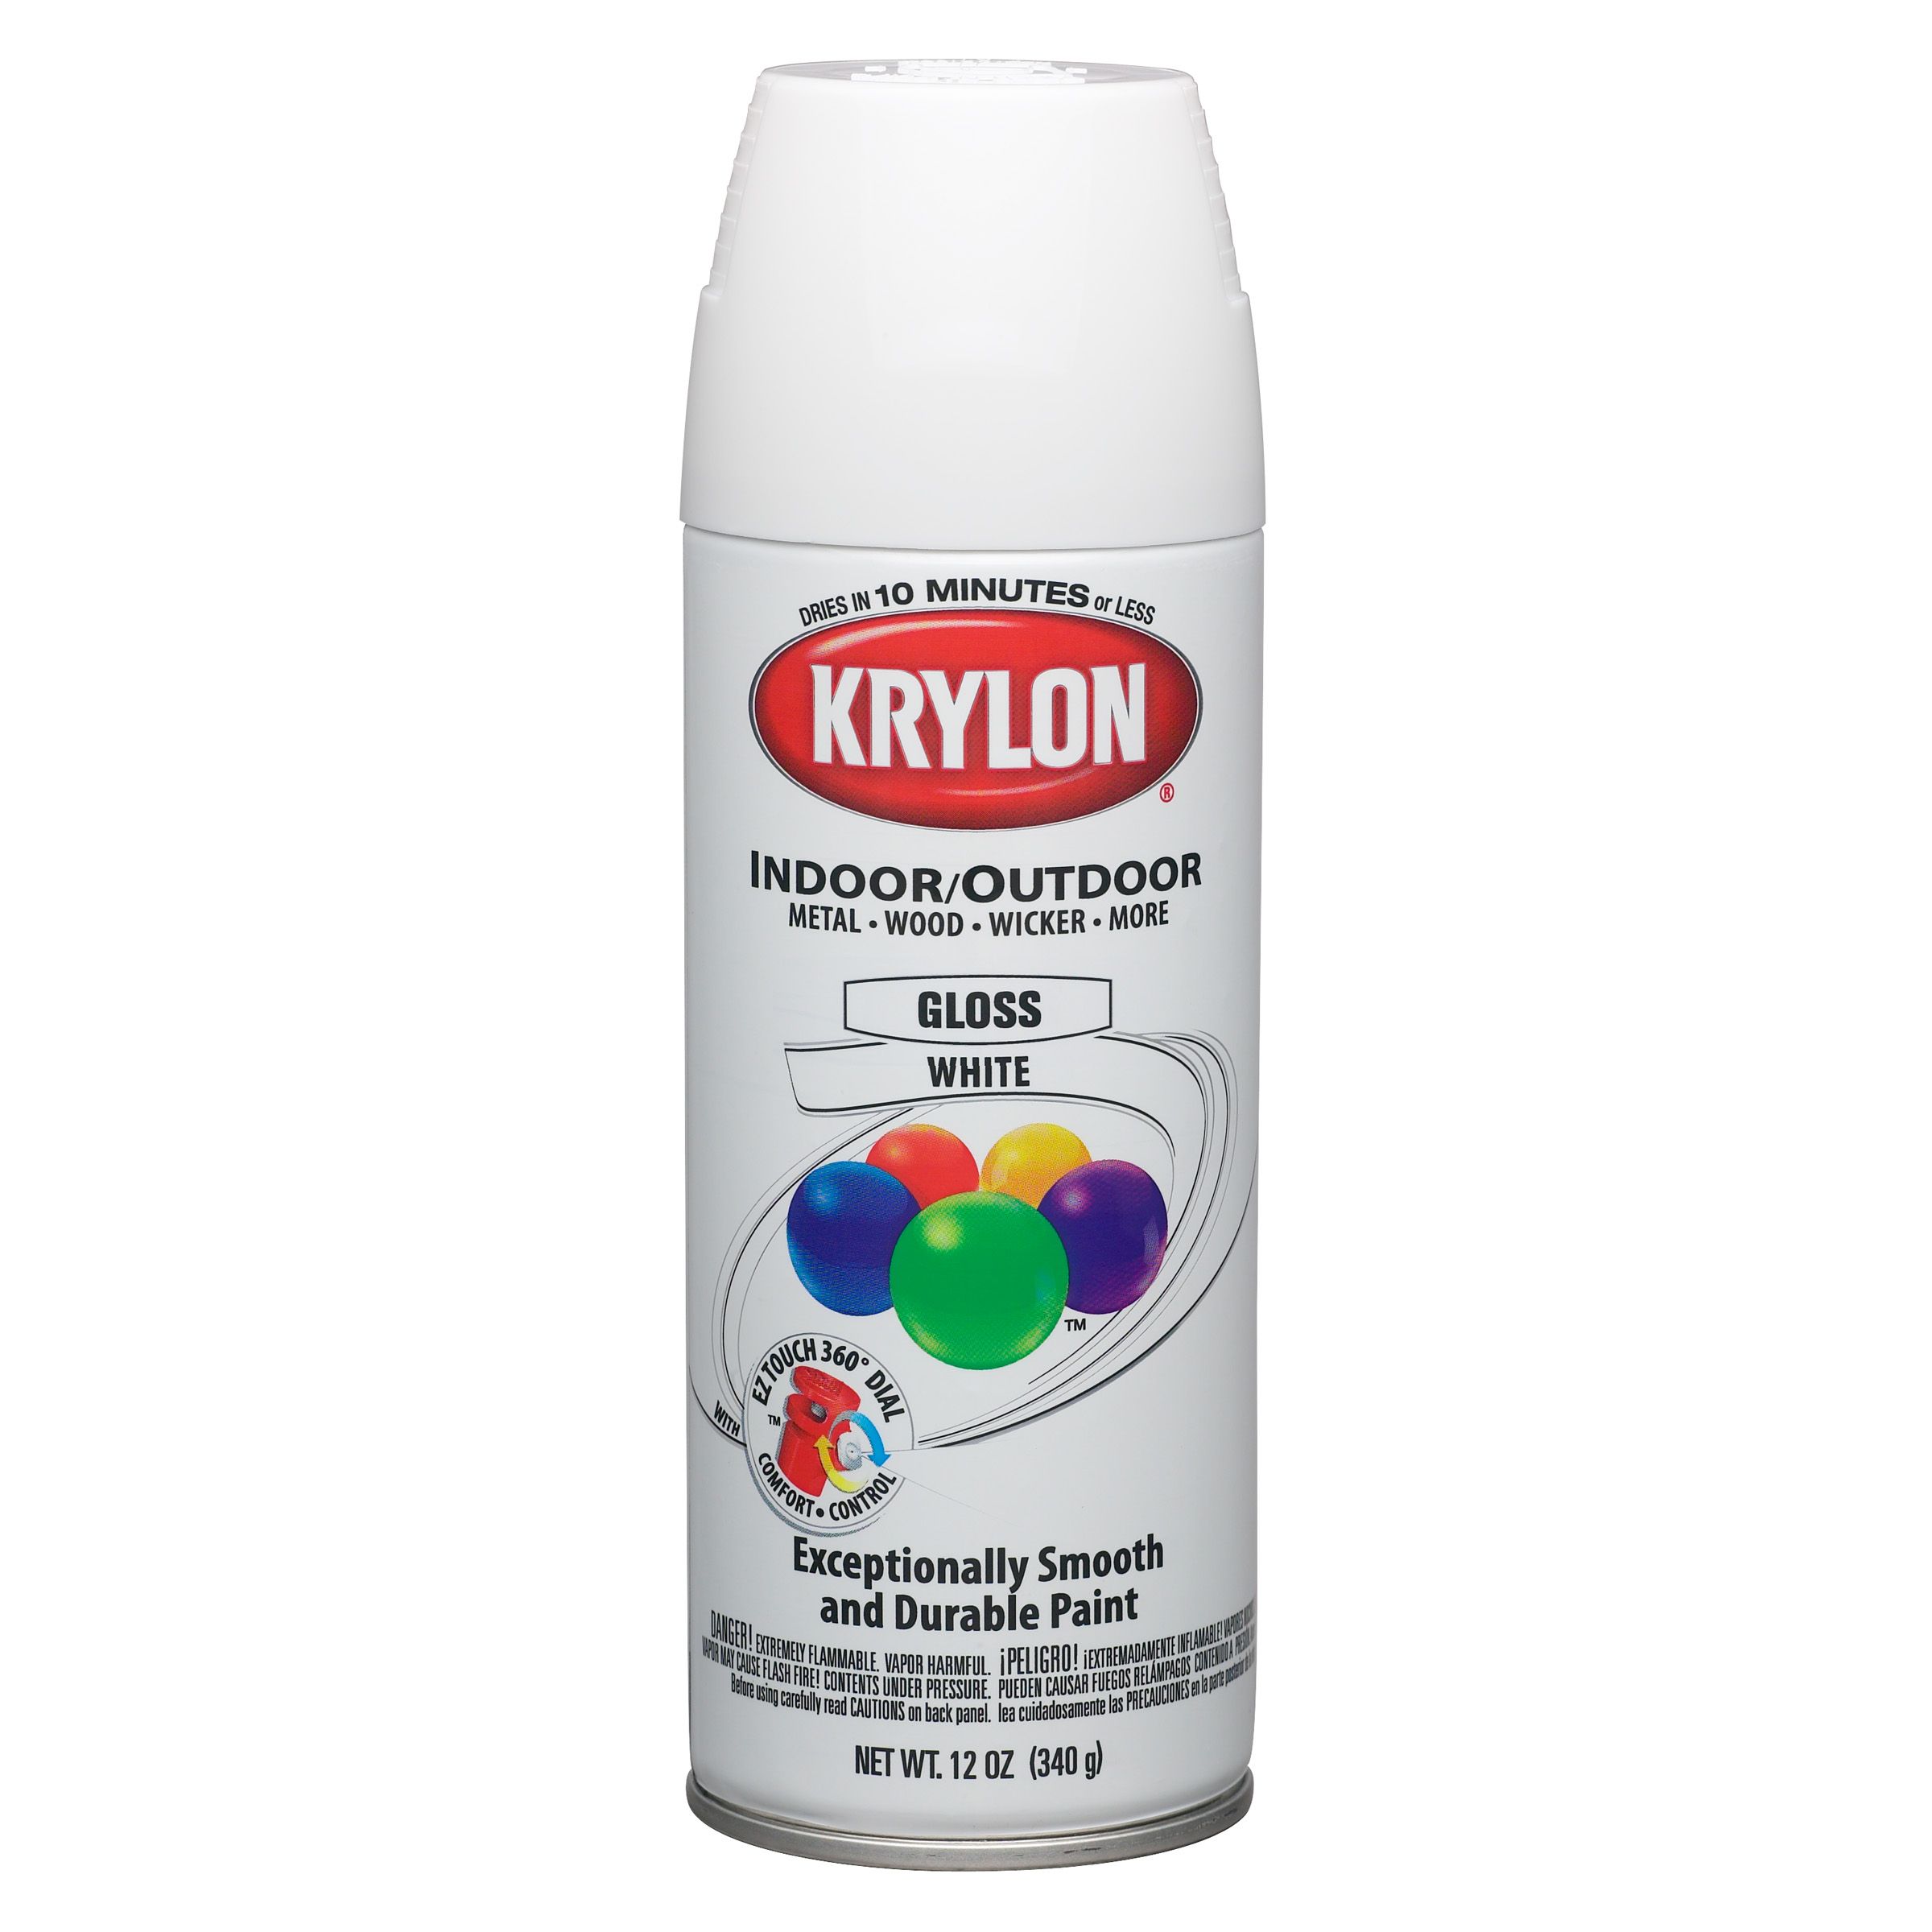 Krylon Glssywhite-Paint Spray